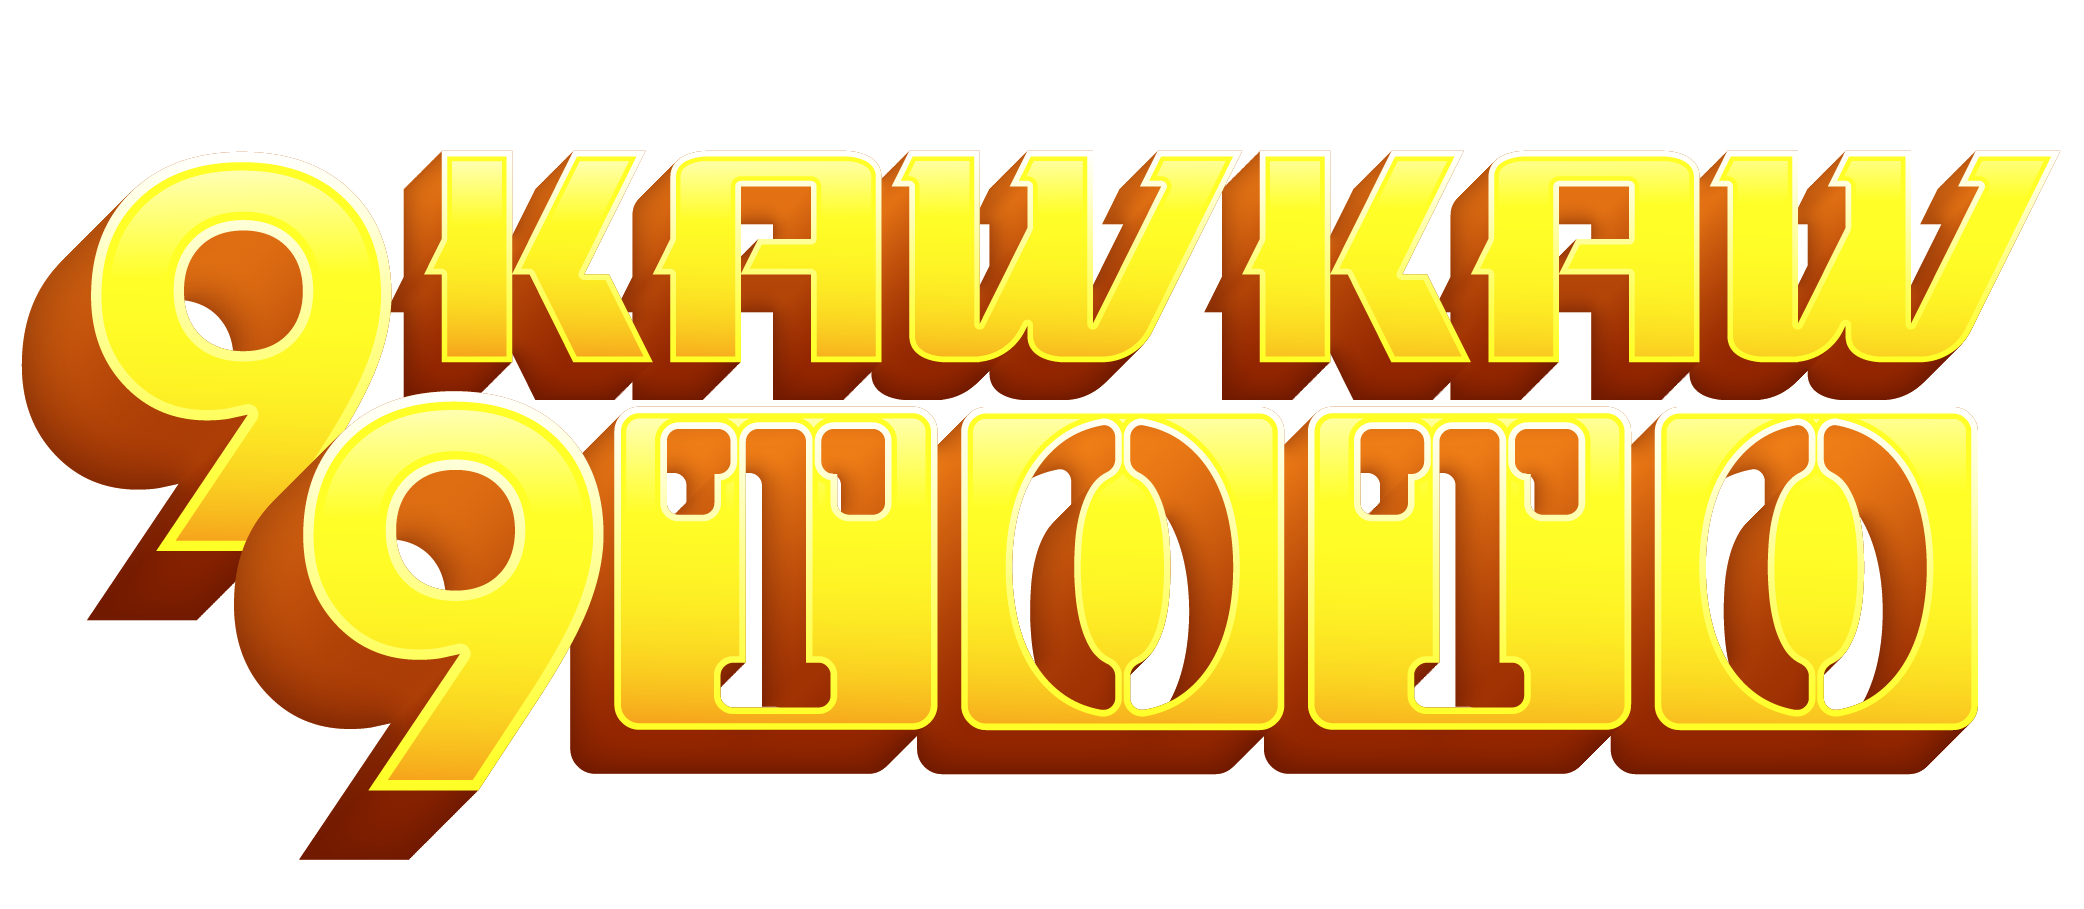 Kawkawtoto Wap Kawkawtoto Web Daftar Login Link Alternatif Kawkawtoto